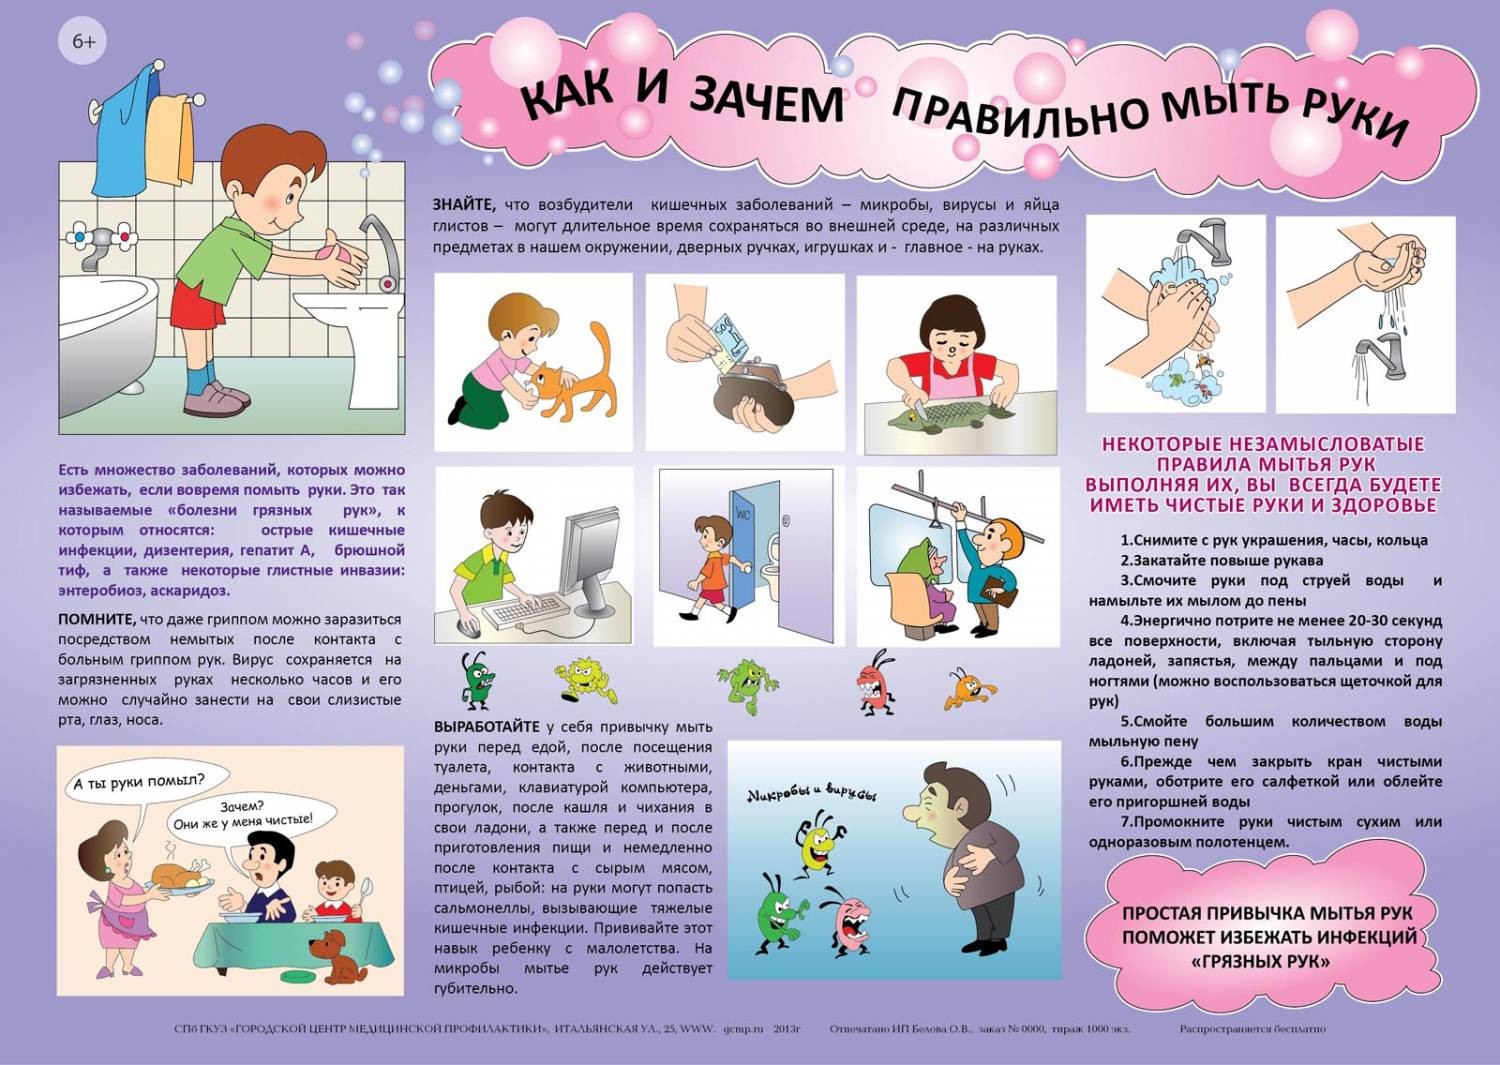 Как научить и приучить ребенка правильно мыть руки